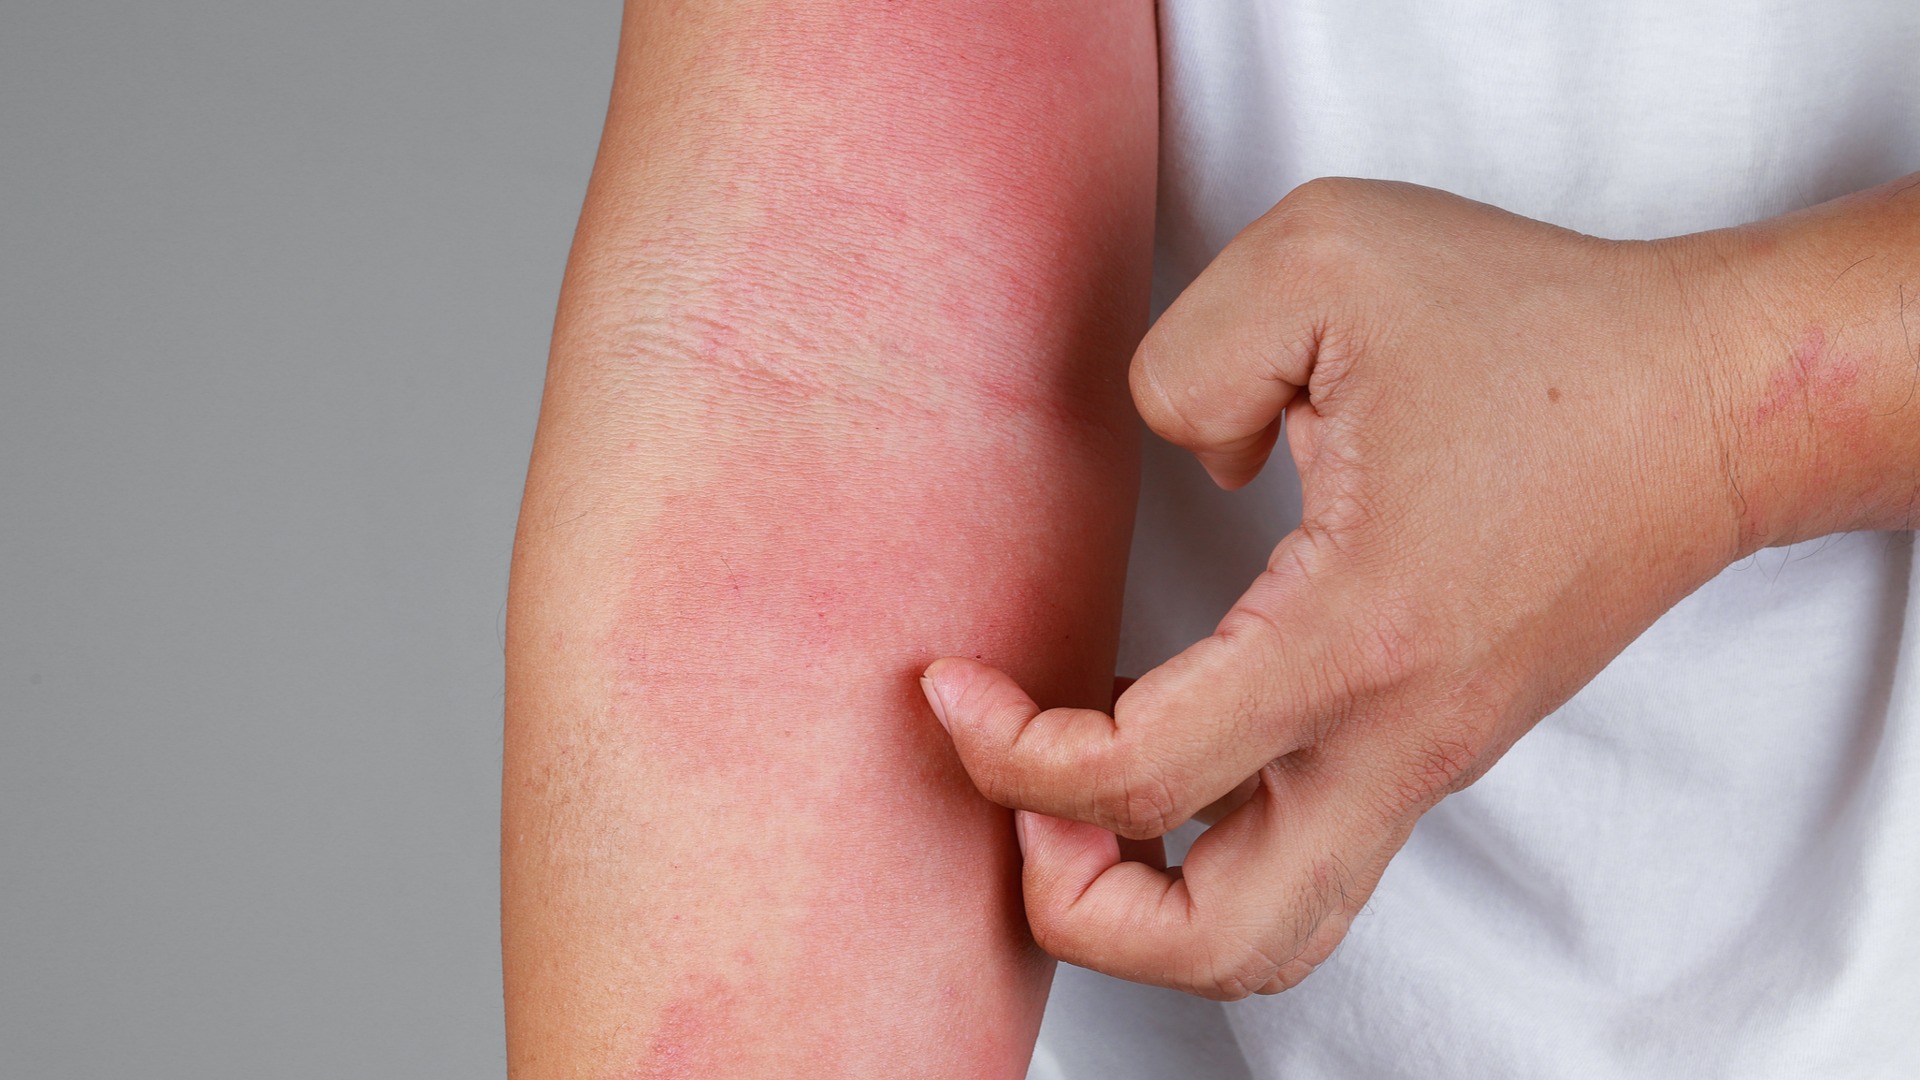 Eczéma : le contact avec l'allergène doit être évité - Pourquoi